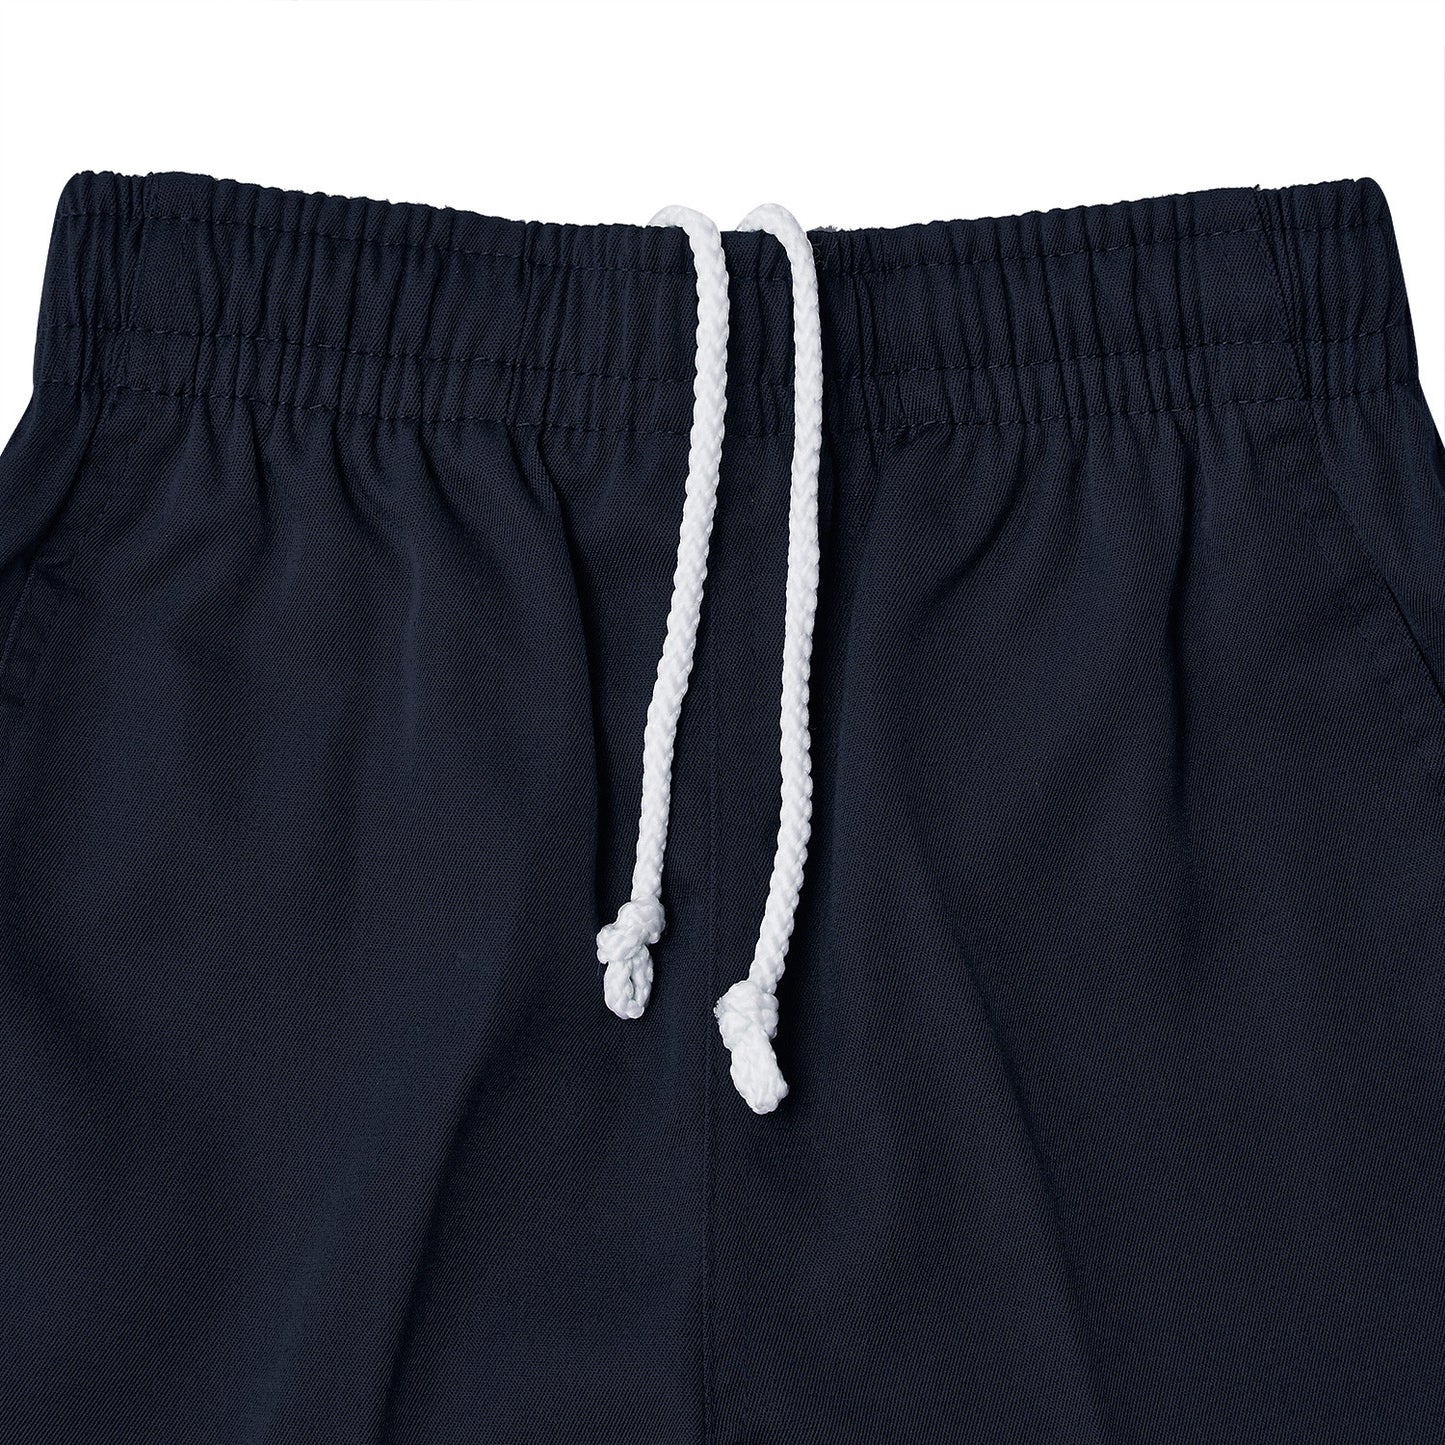 Shorts ~ School Shorts